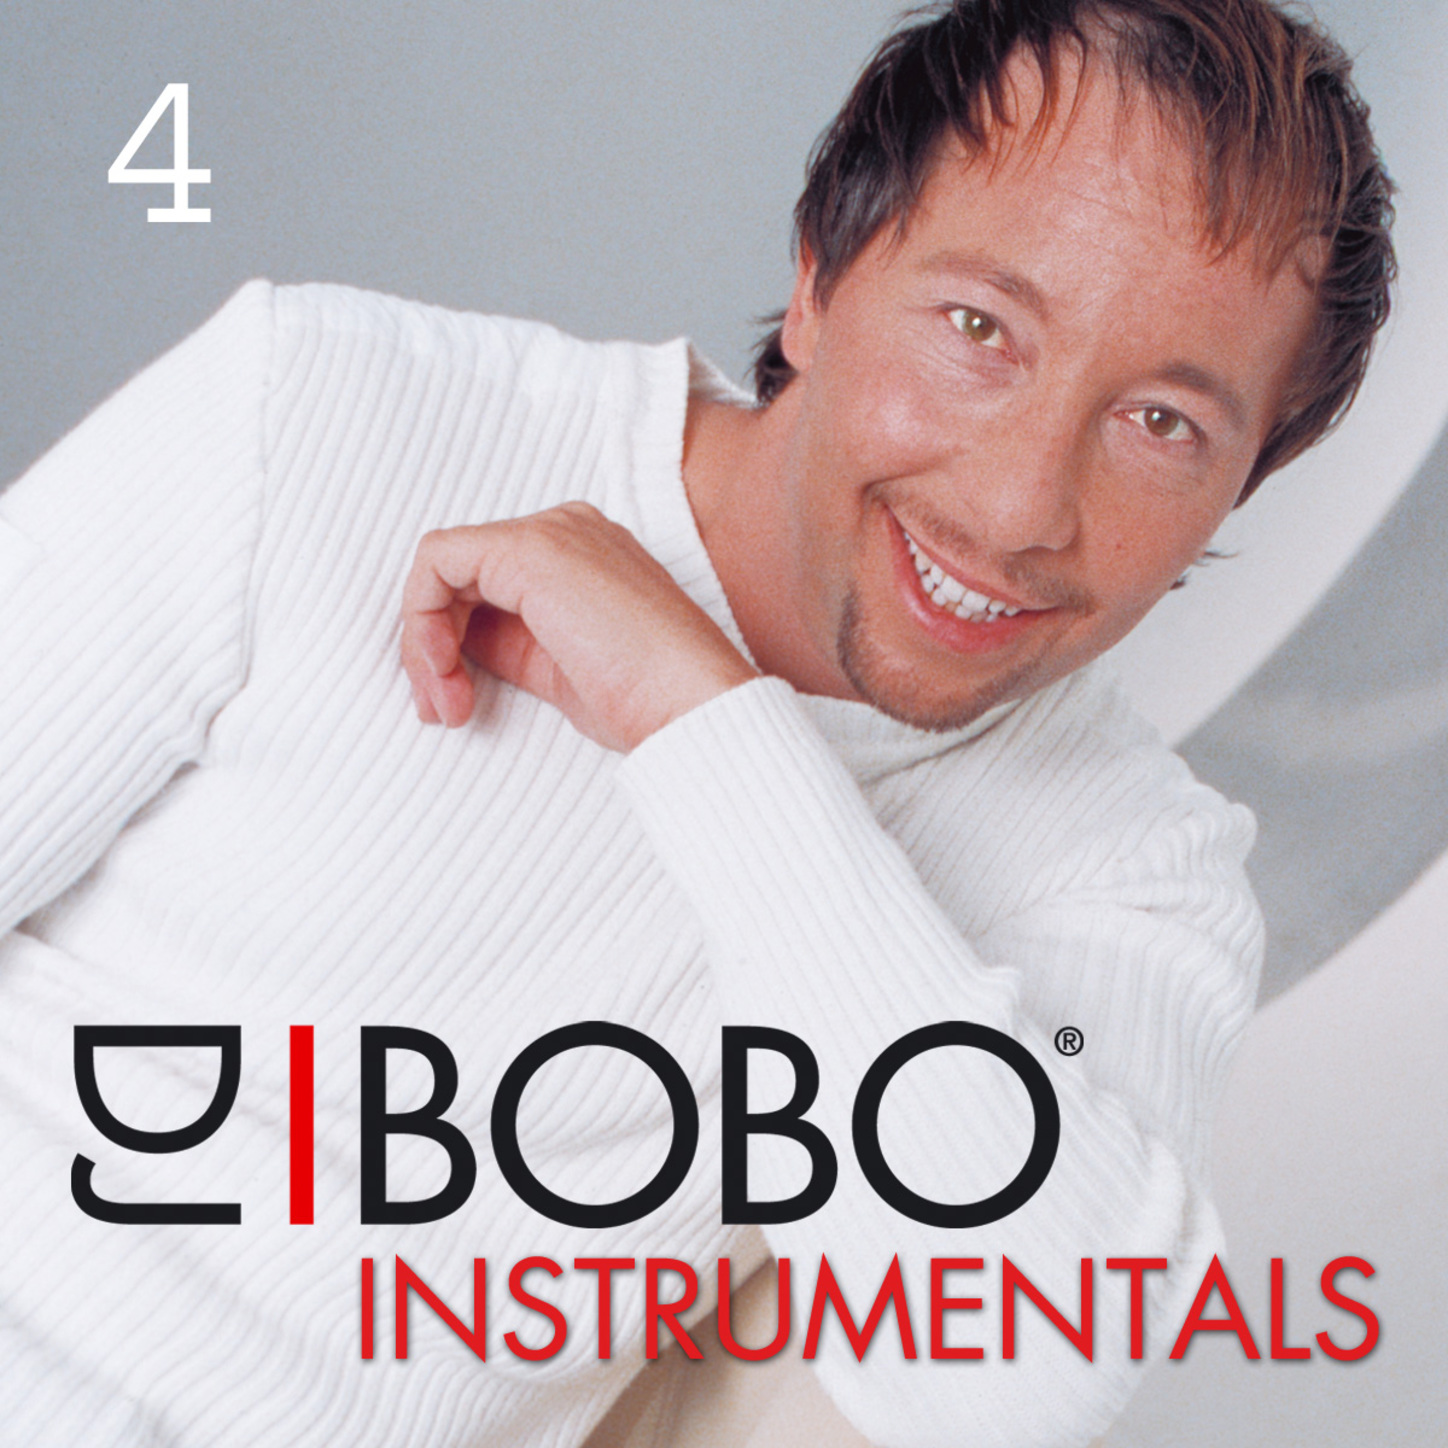 DJ Bobo Instrumentals (Part 4)